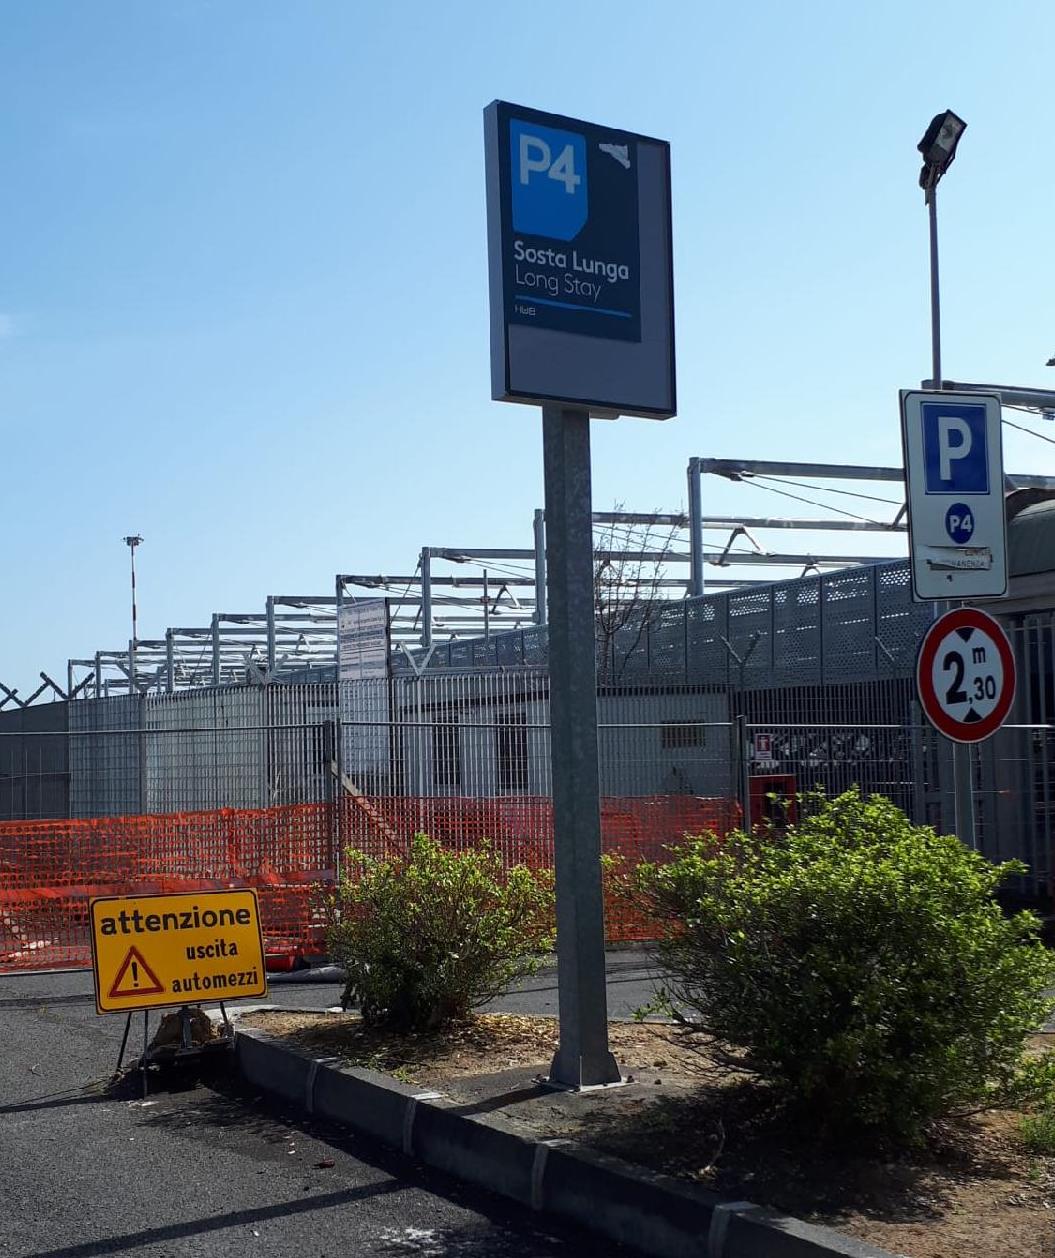 Aeroporto di Catania: chiusura temporanea parcheggio P4 (lunga sosta)